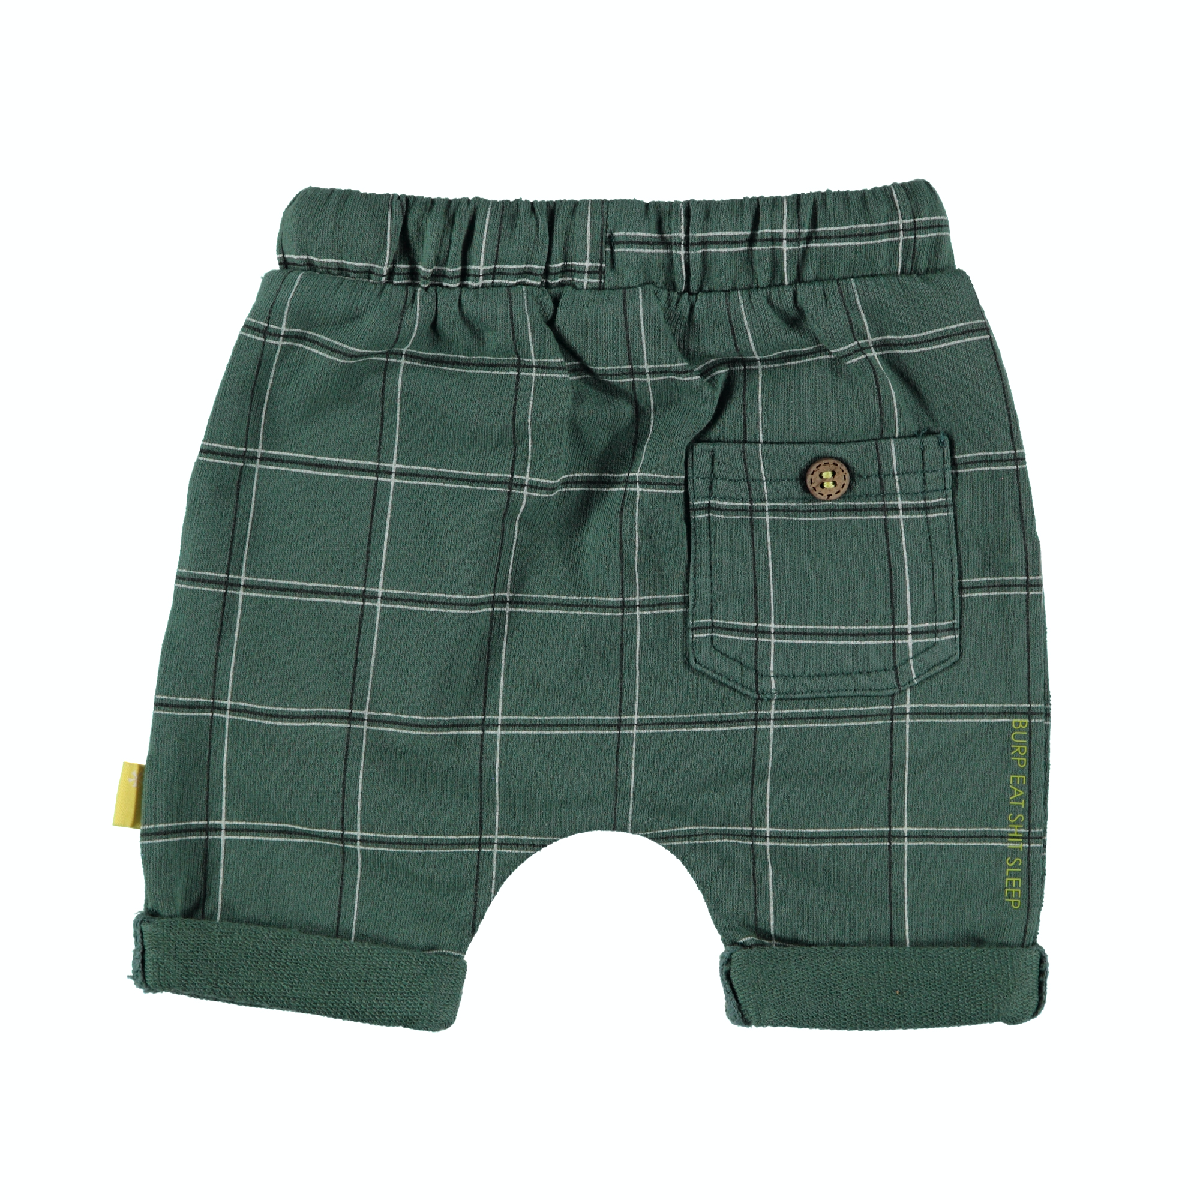 Jongens Shorts Check van B.E.S.S. in de kleur Green in maat 68.